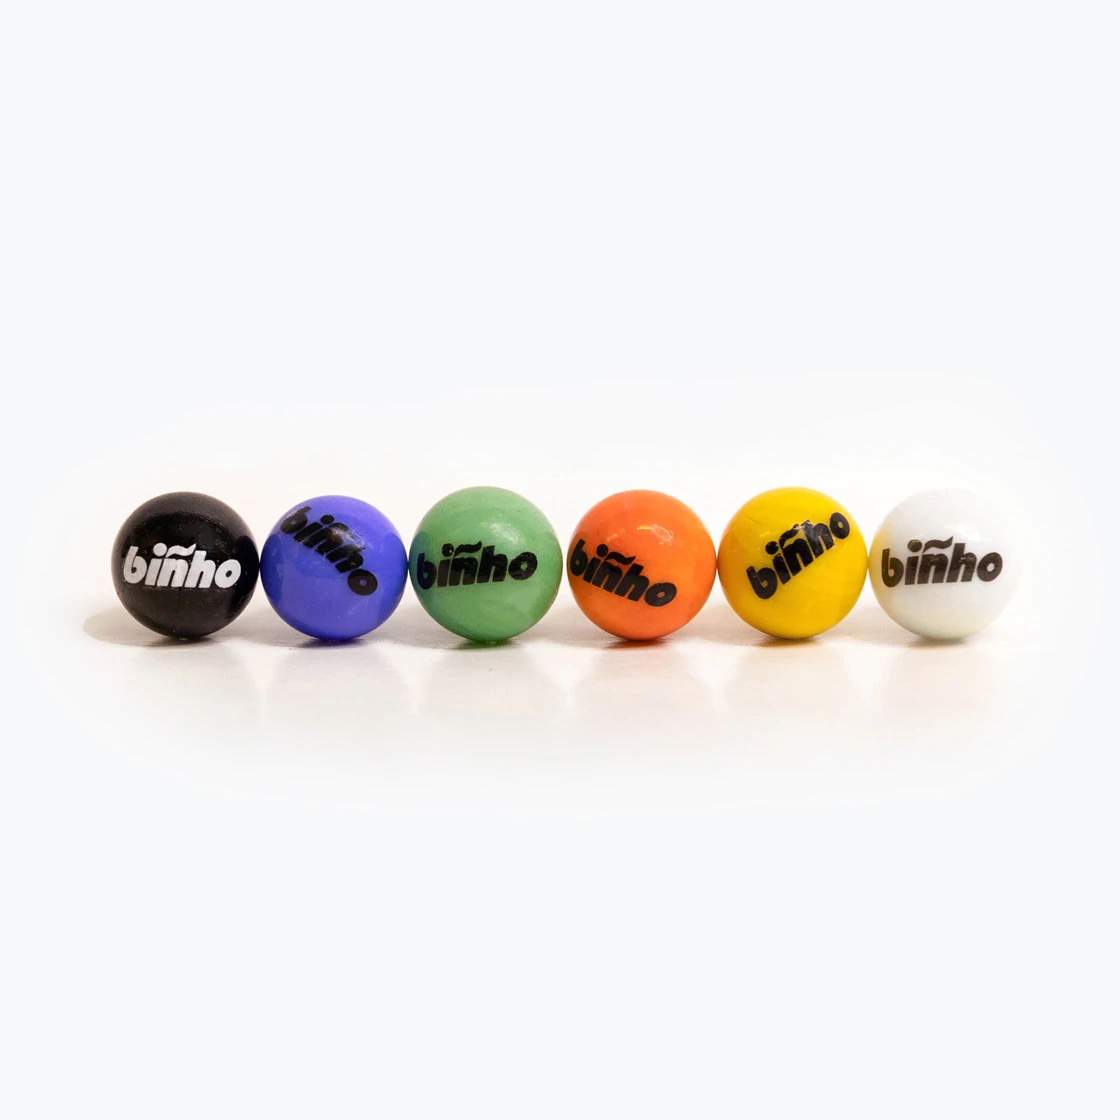 Biñho Balls: Variety Pack